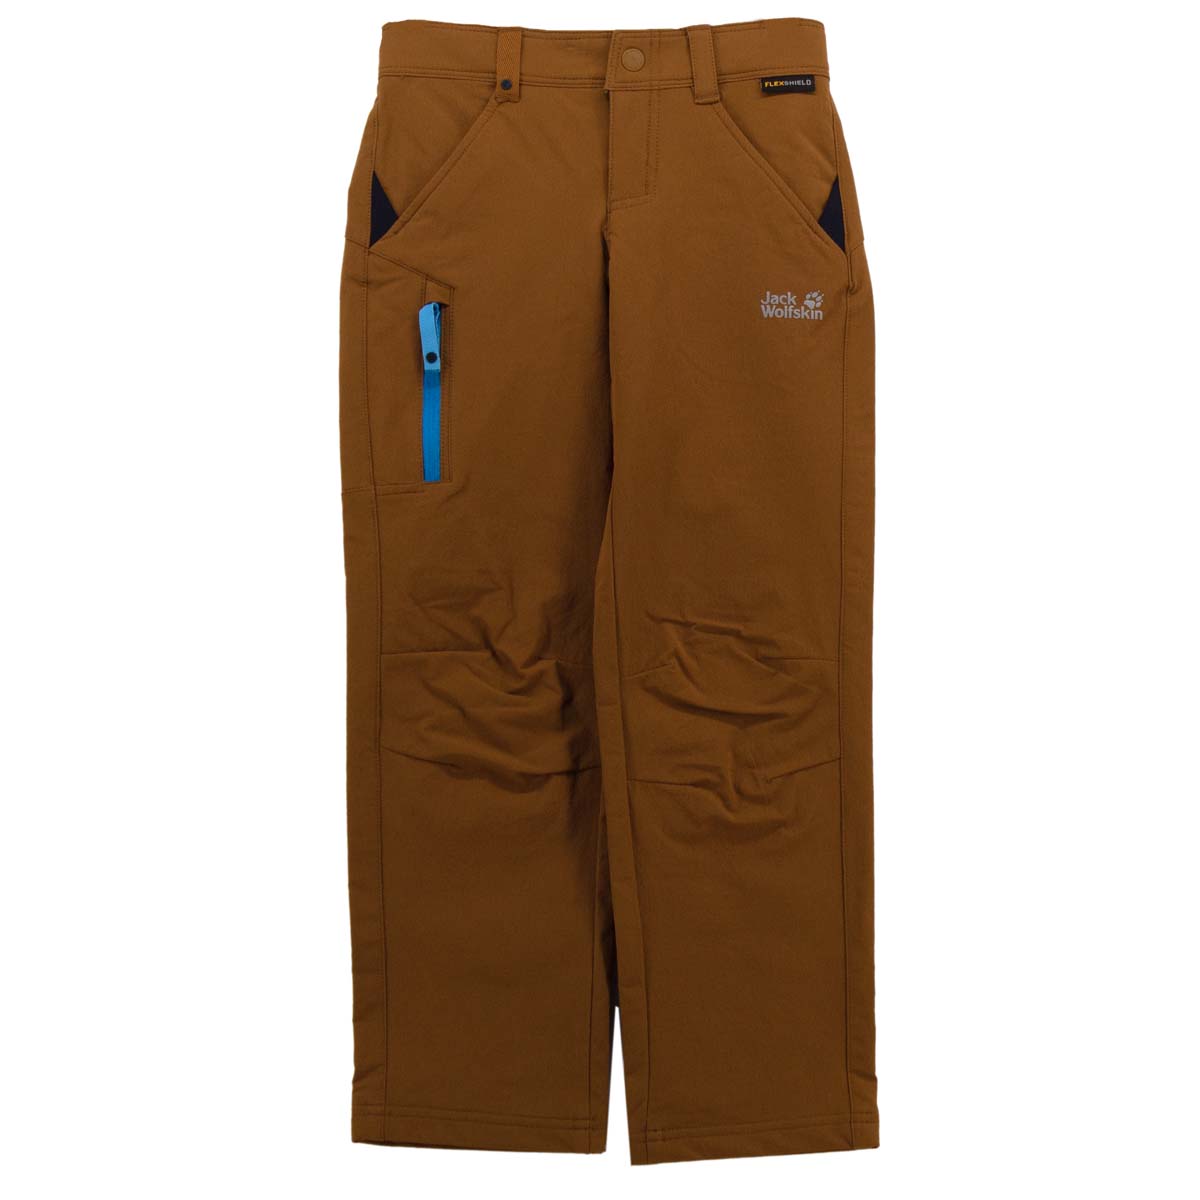 Спортивные брюки Jack Wolfskin Activate Pants Cargo, коричневый jack wolfskin activate pants спортивные брюки